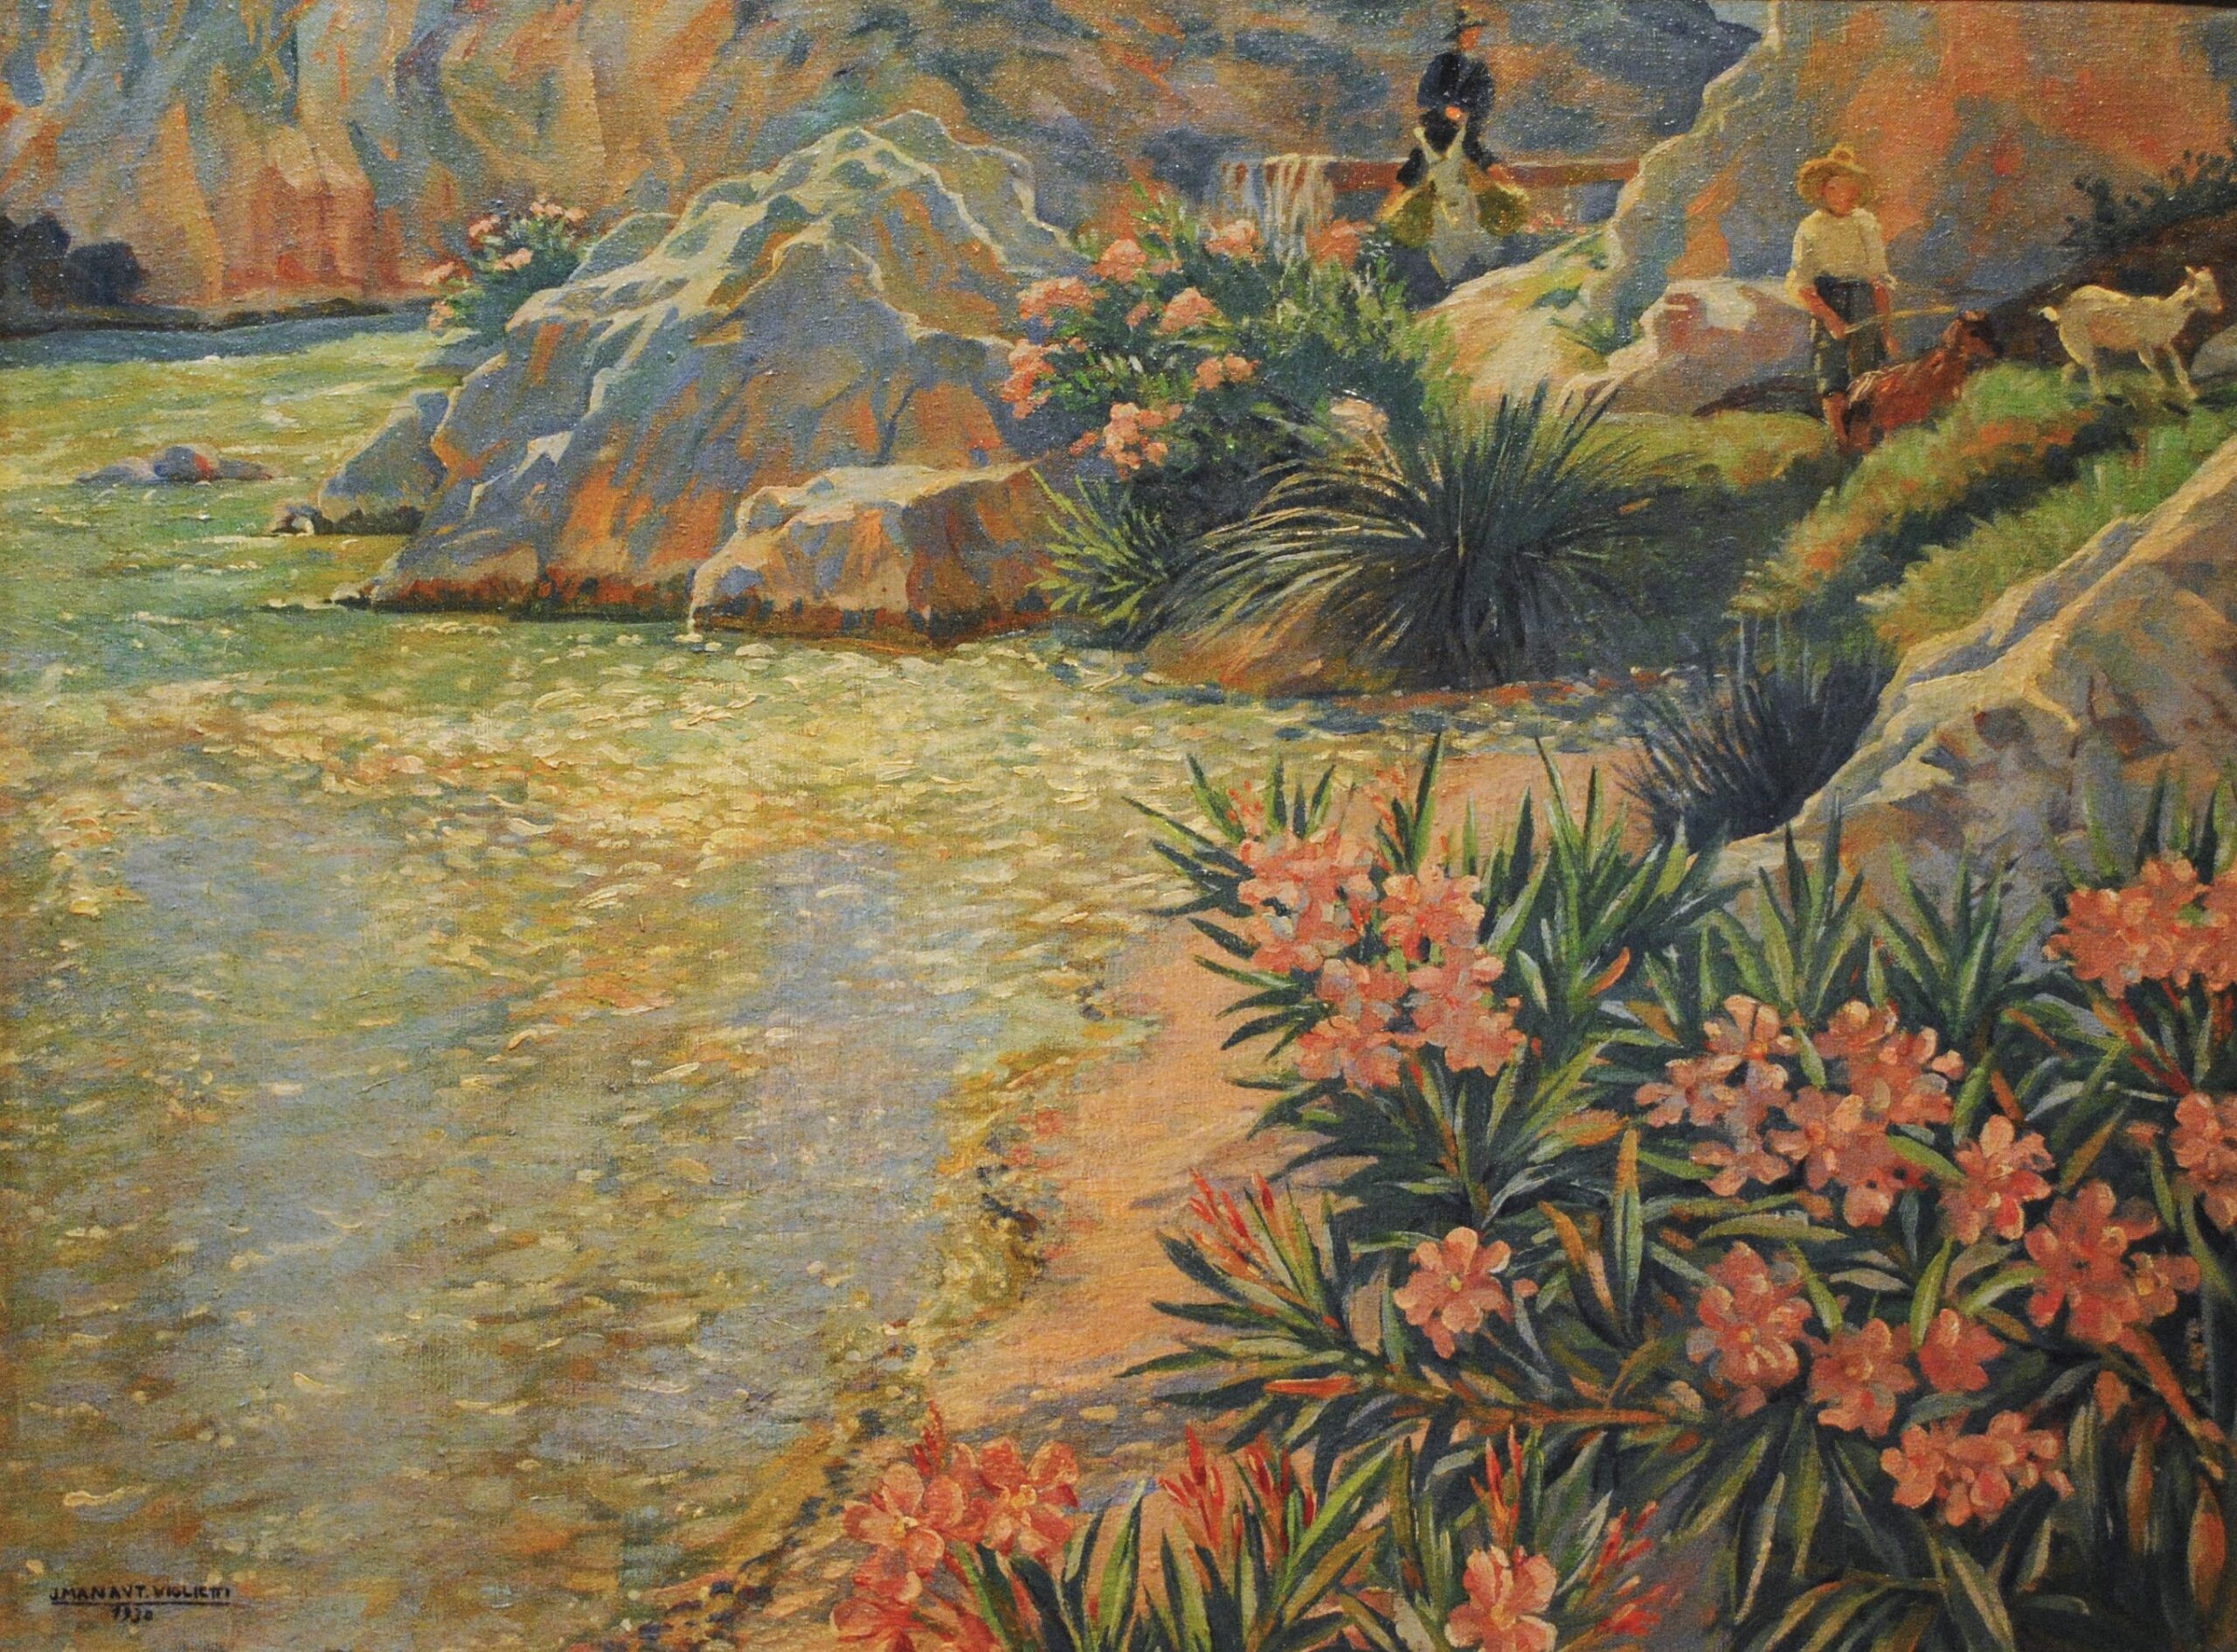 Pintura de José Manaut titulada Orillas del Turia, Loriguilla (Valencia), 1930. Óleo sobre lienzo.